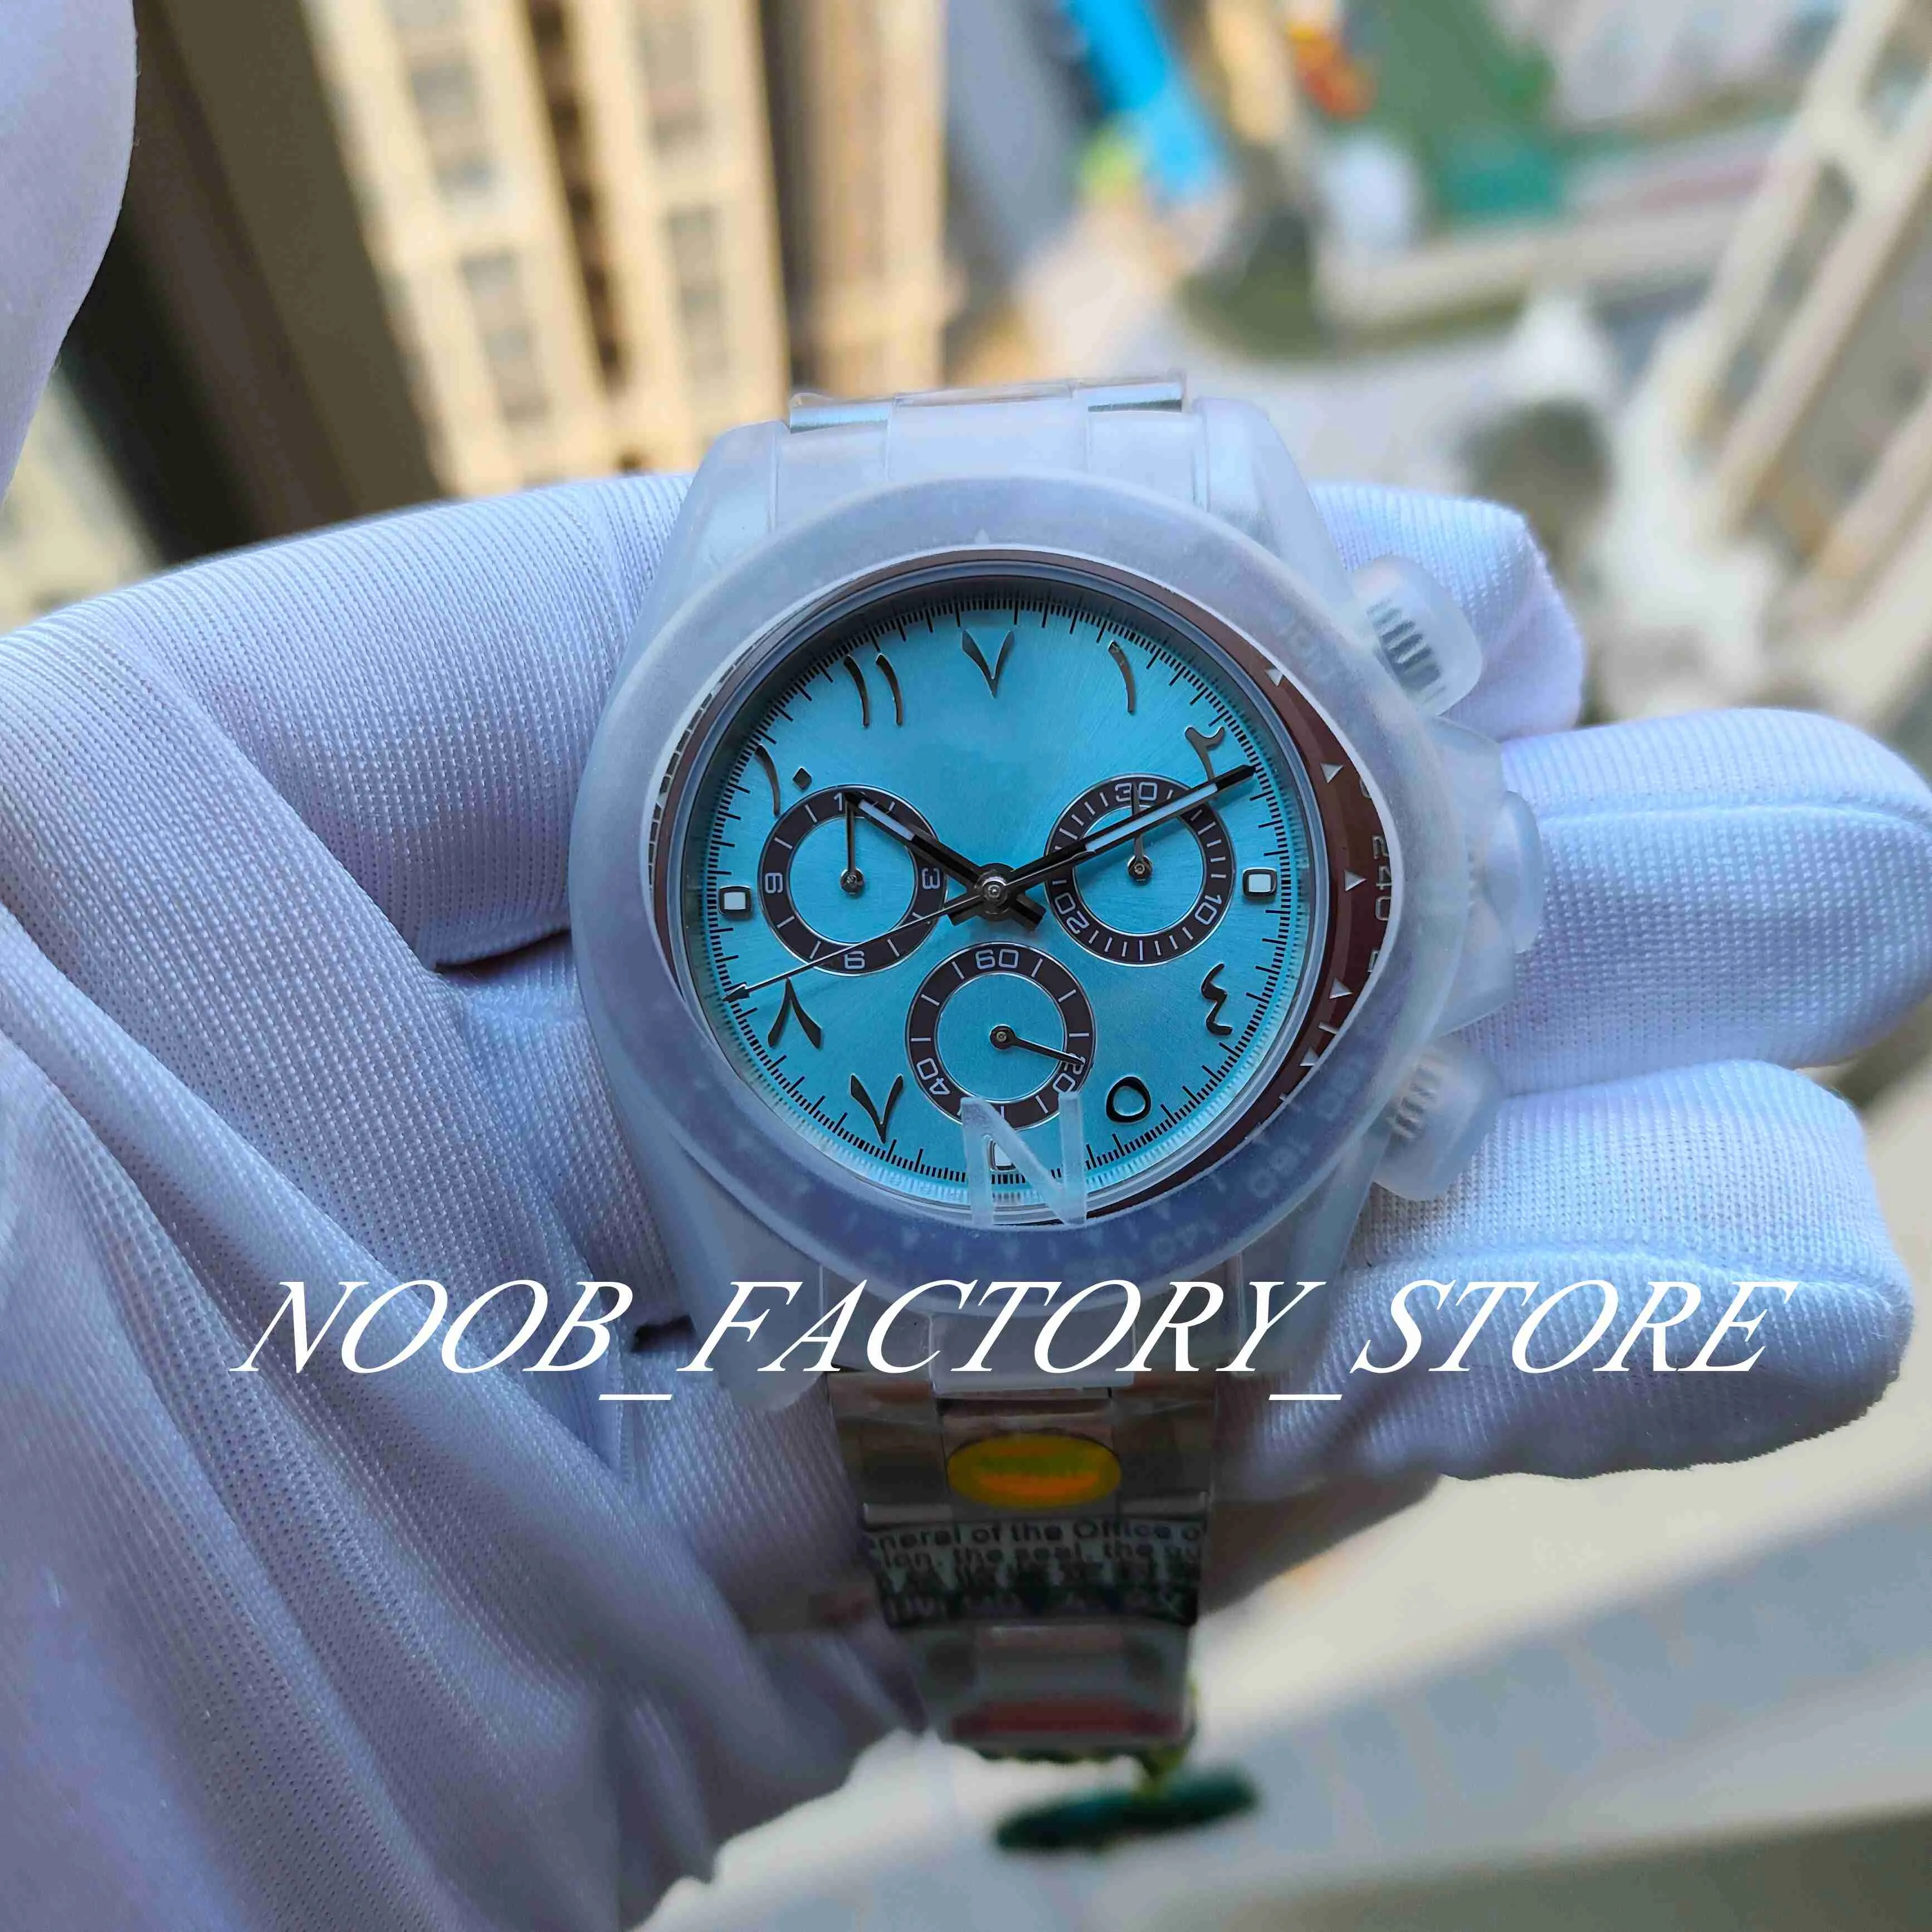 Watch of Men N Factory ultradunne 12,4 mm keramische ring 40 mm Midden-Oosten speciale editie Arabische wijzerplaat Cal.7750 automatisch uurwerk 904L stalen chronograaf horloges